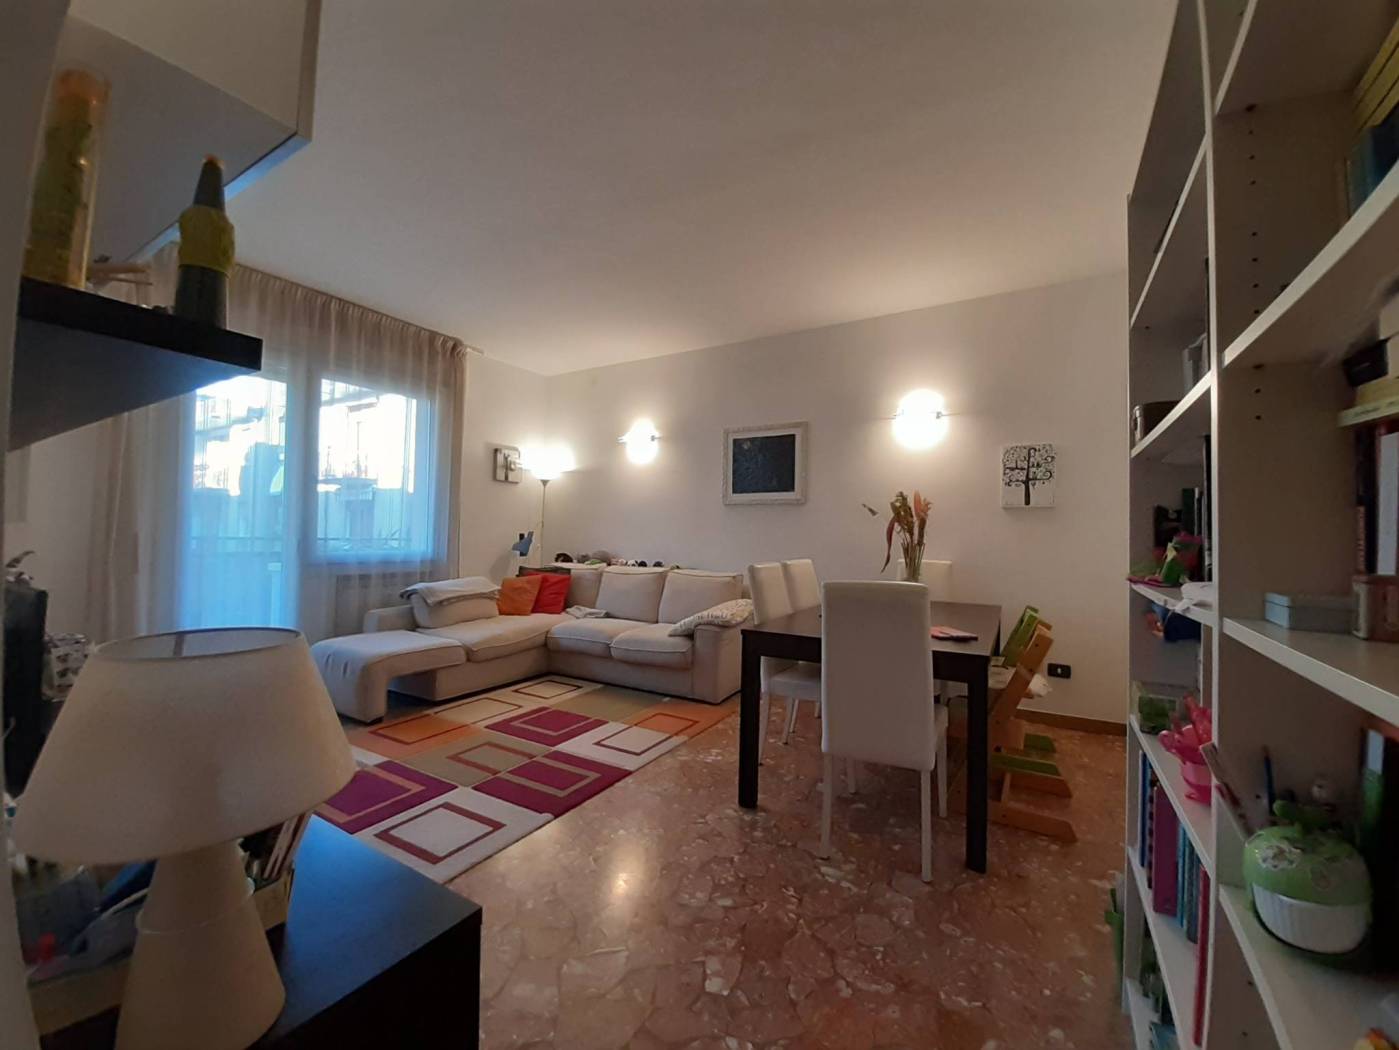 Mestre primo Viale San Marco appartamento 3 piano no scensore mq 90 restaurato soggiorno, cucina abitabile, camera matrimoniale, camera singola, 